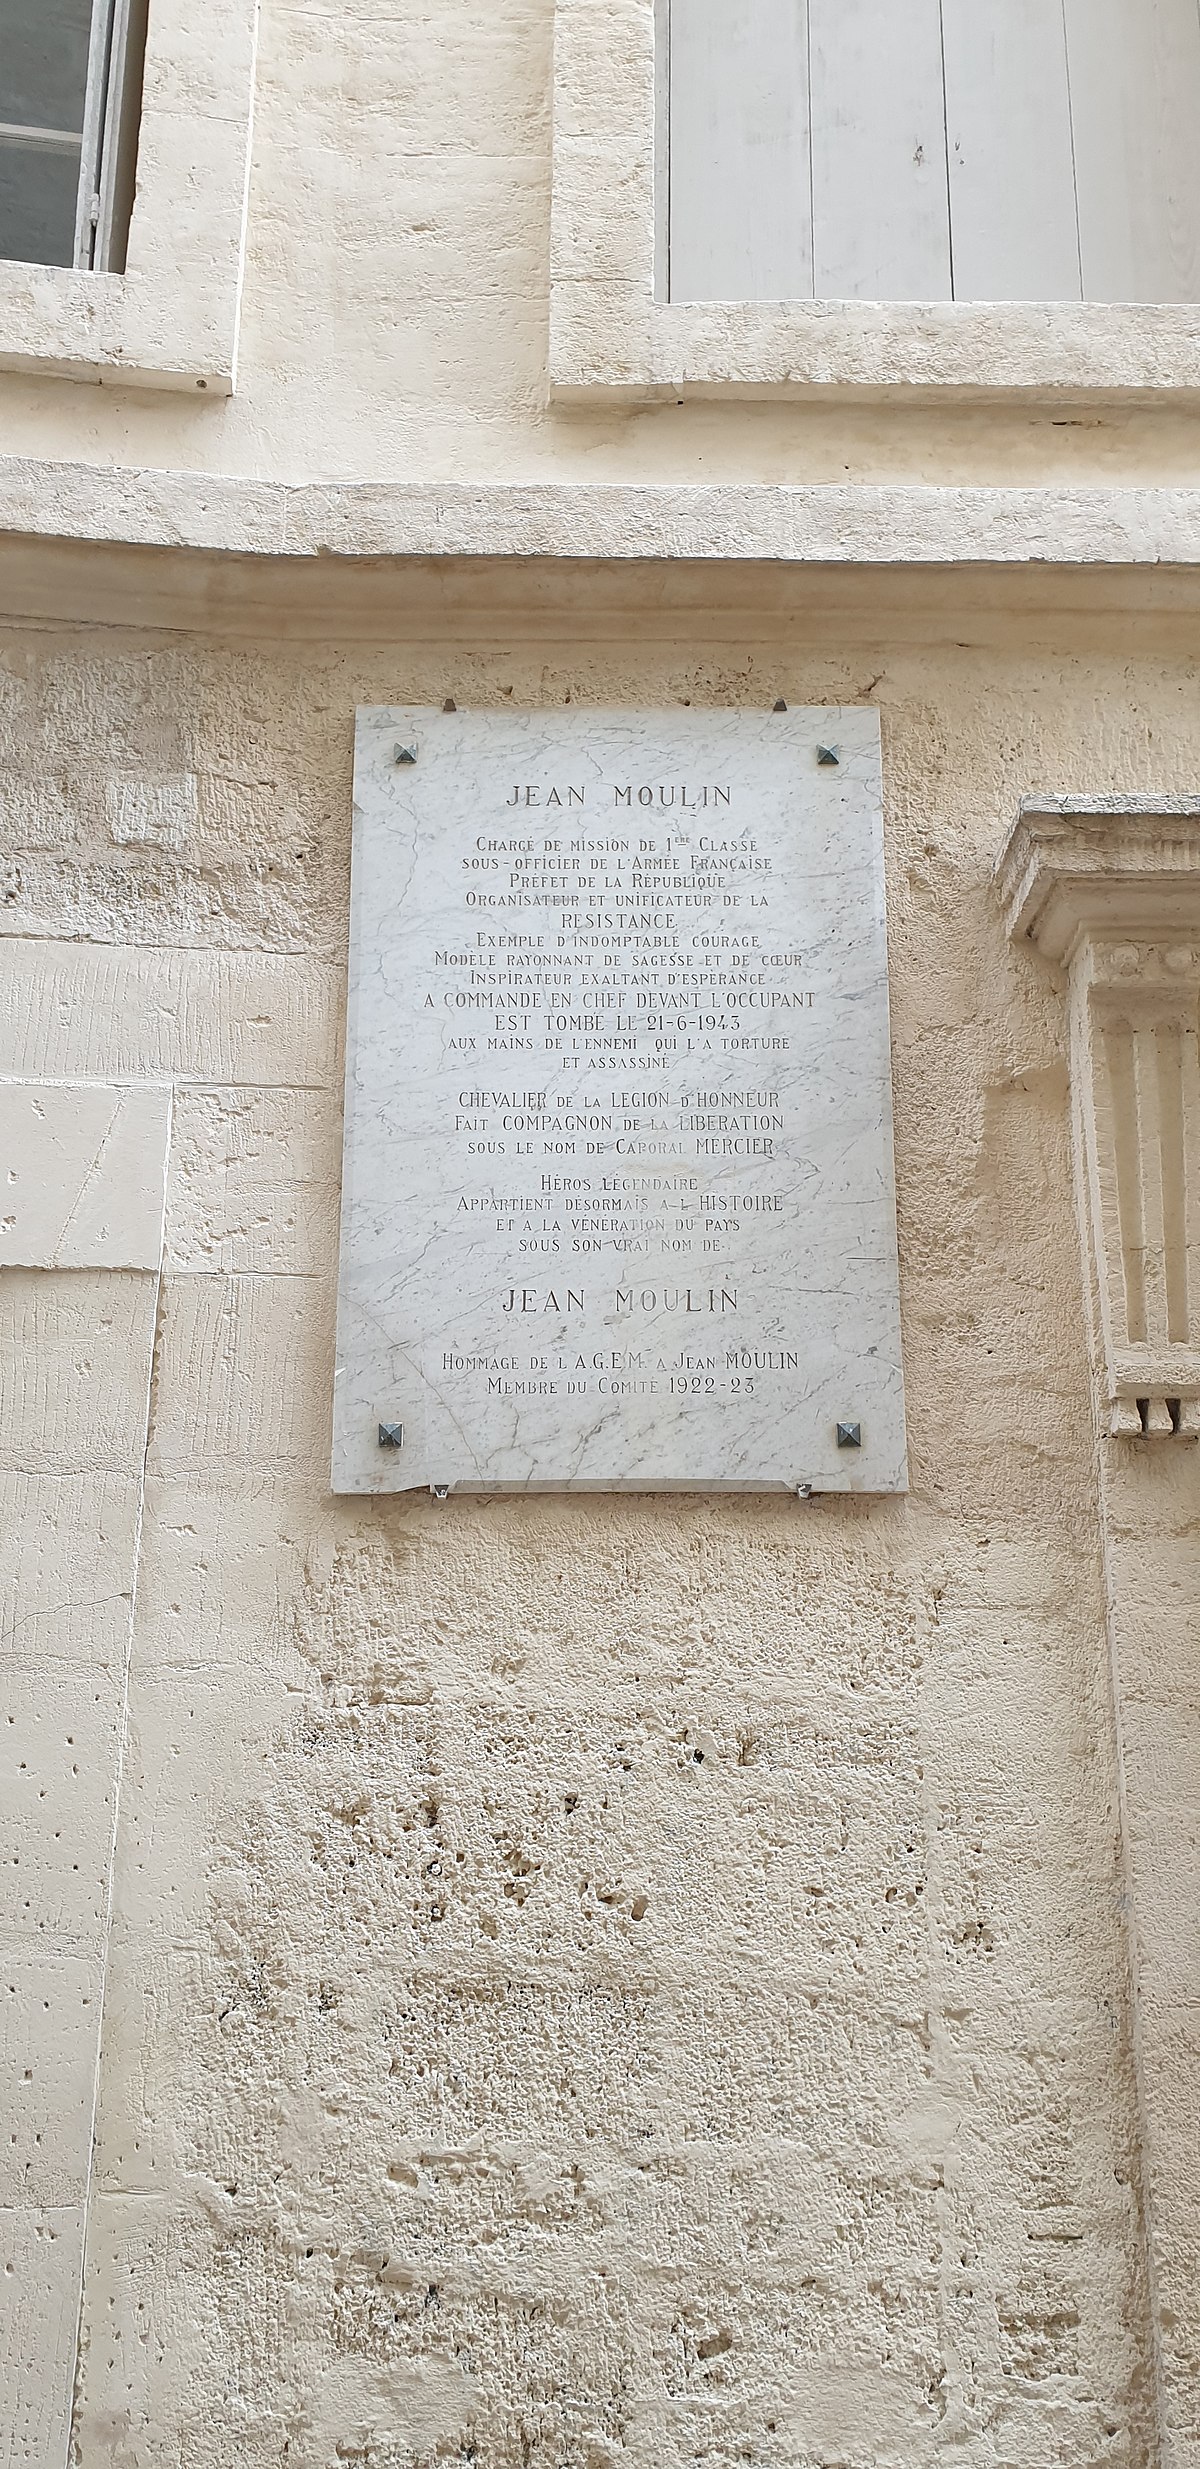 File:Logis de la Croix-d'Or, plaque Jean Moulin, Montpellier.jpg - Wik...